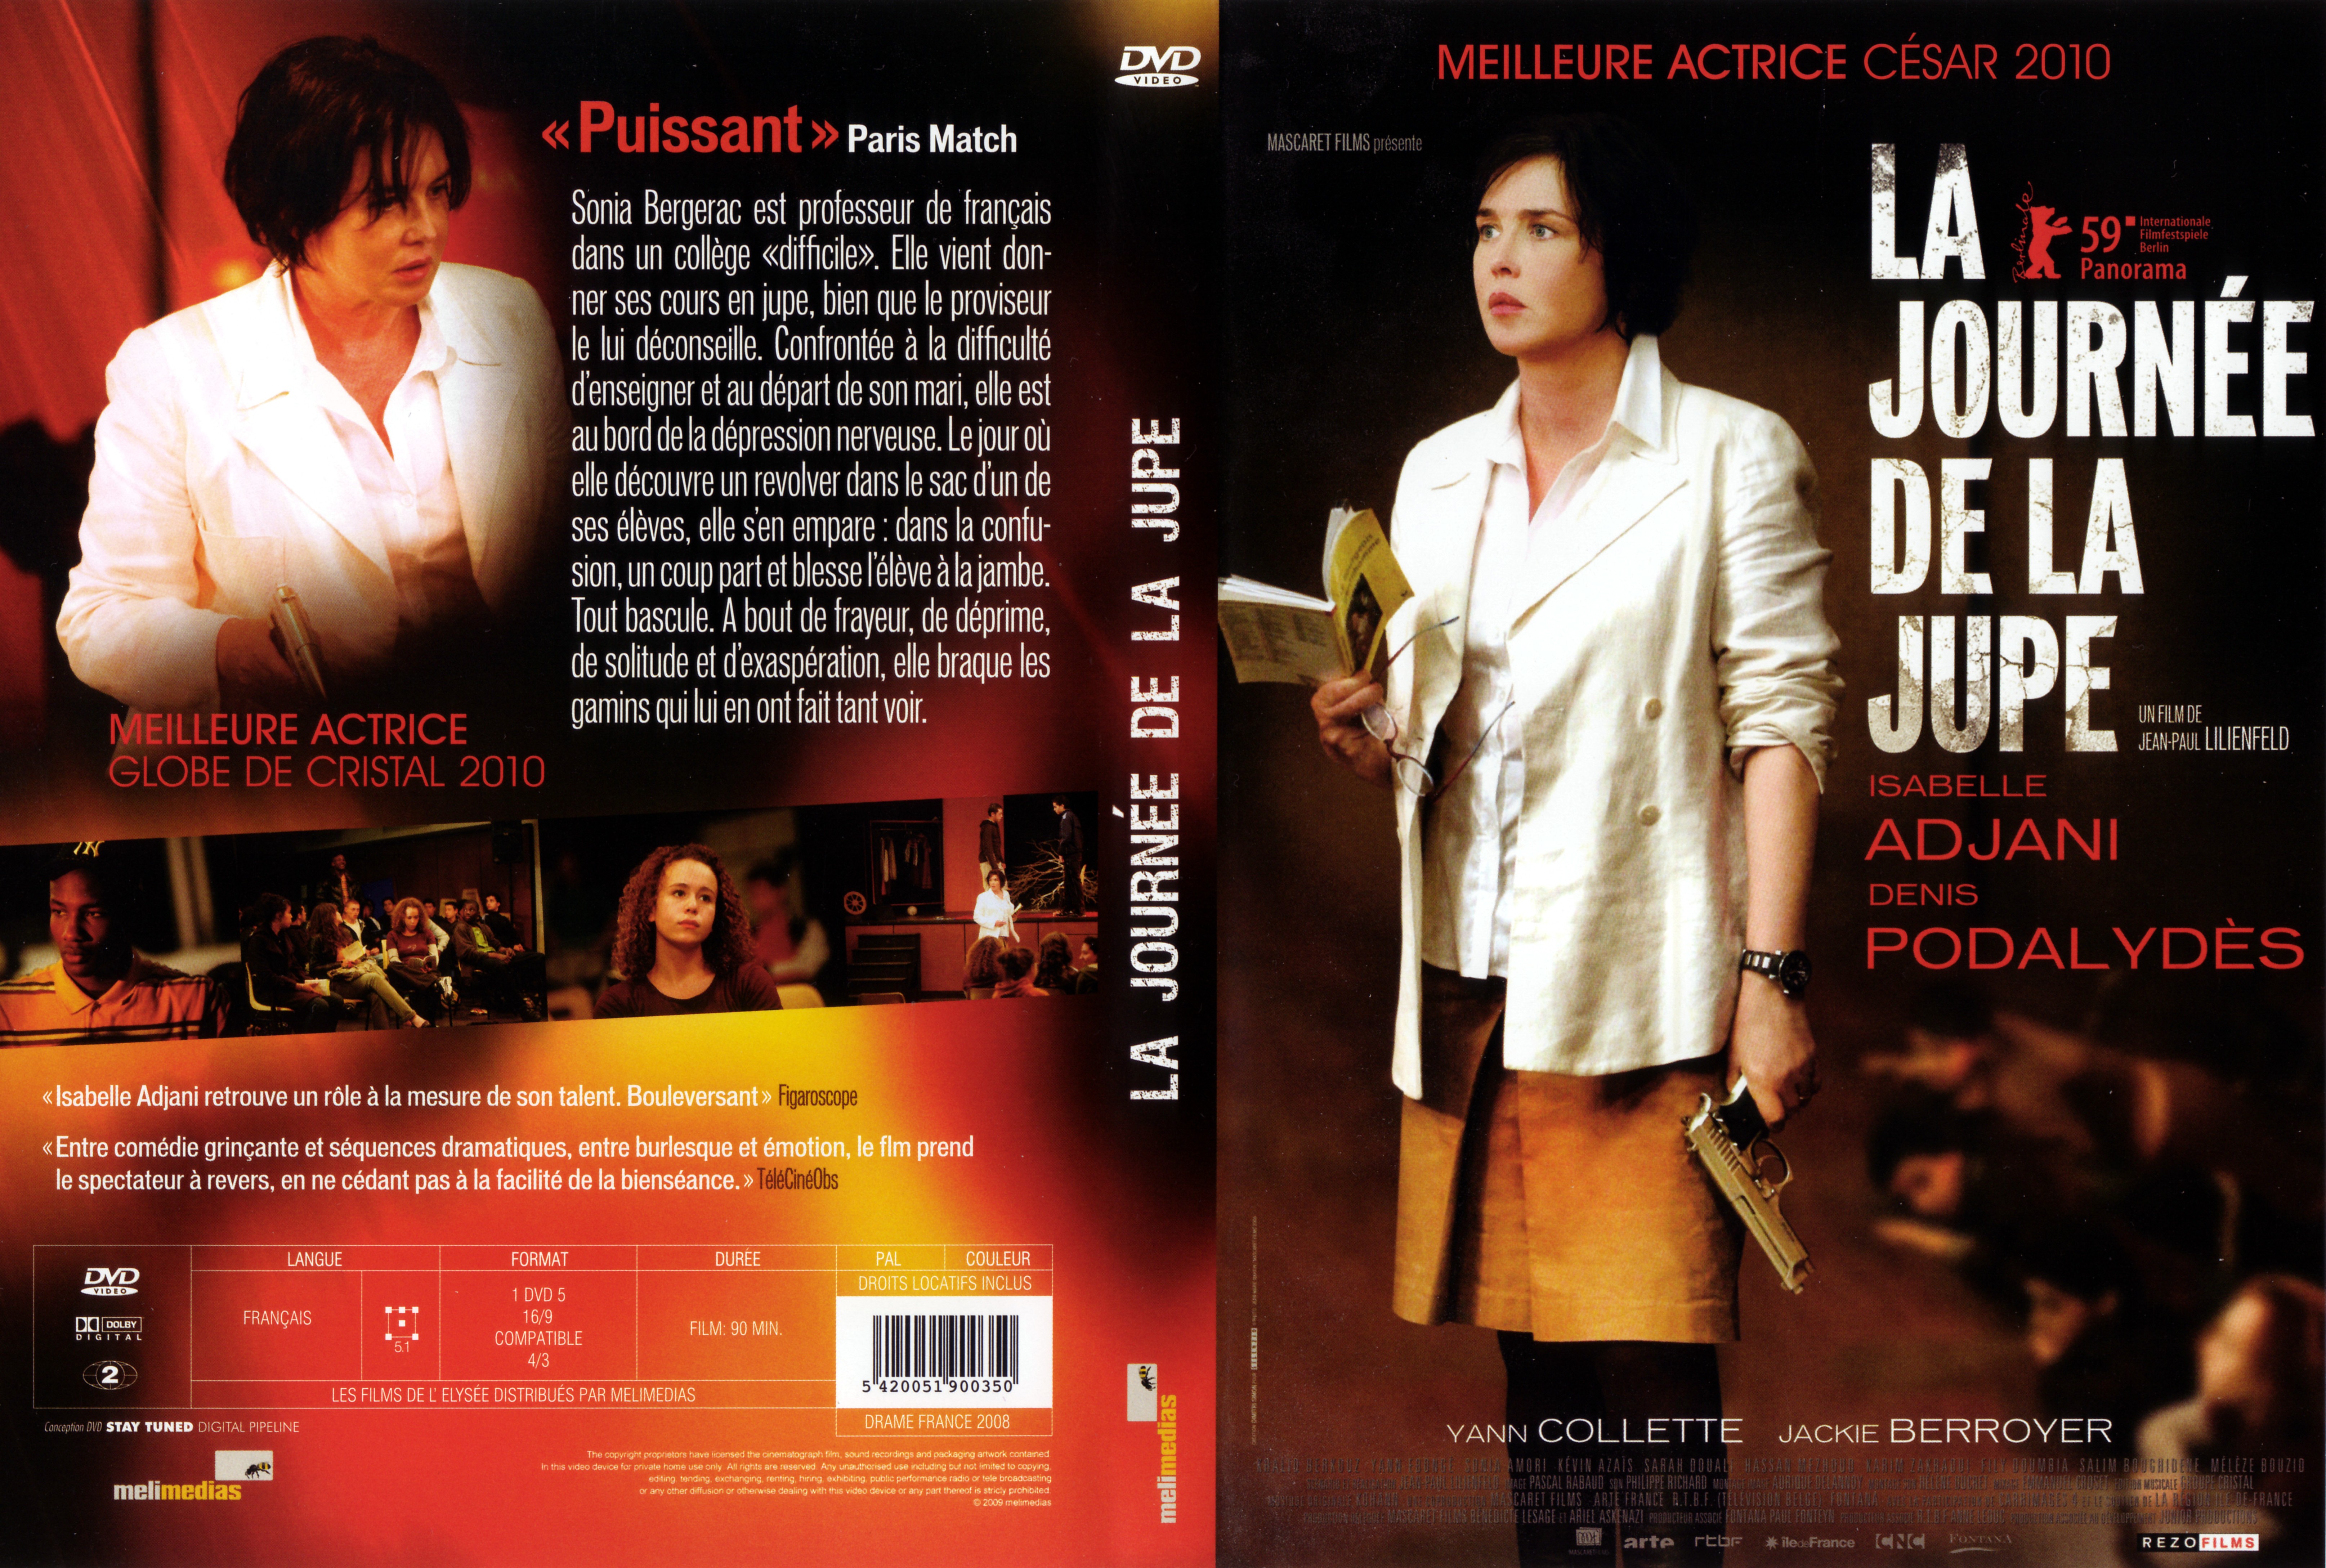 Jaquette DVD La Journe de la jupe v2